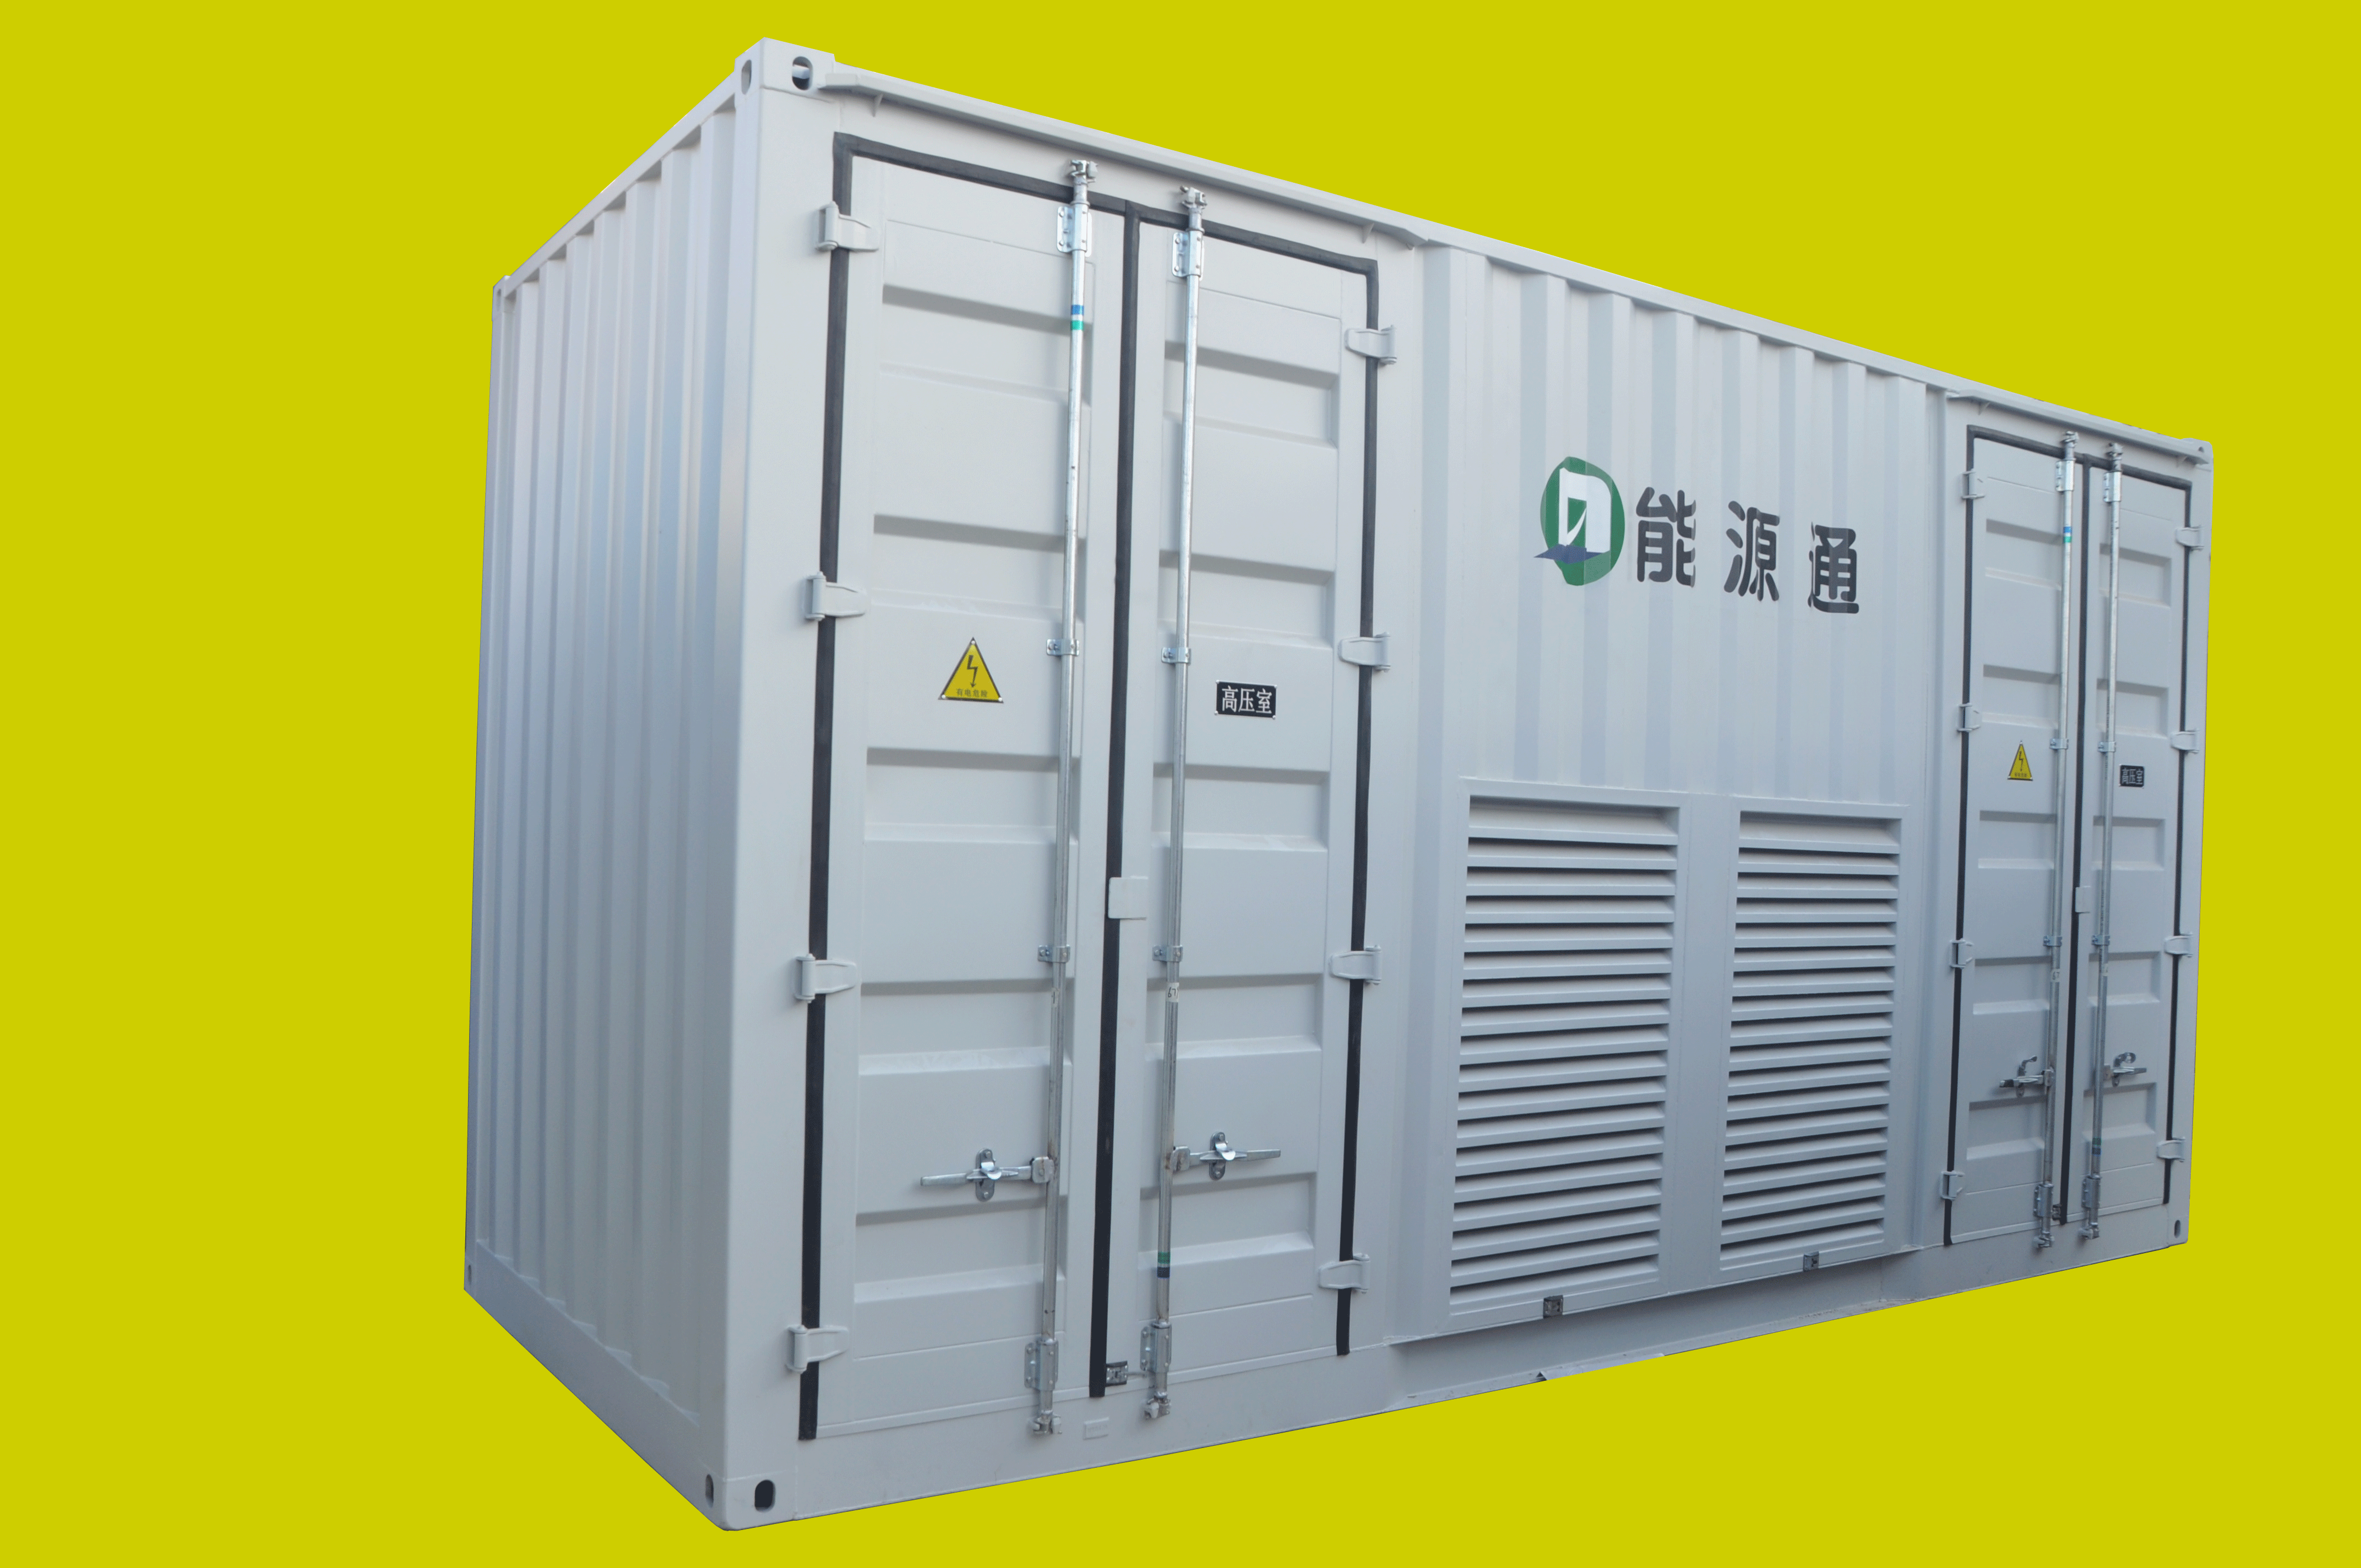 沧州市定做各类保温集装箱厂家定做各类保温集装箱飞翼集装箱私人定做打造高端产品